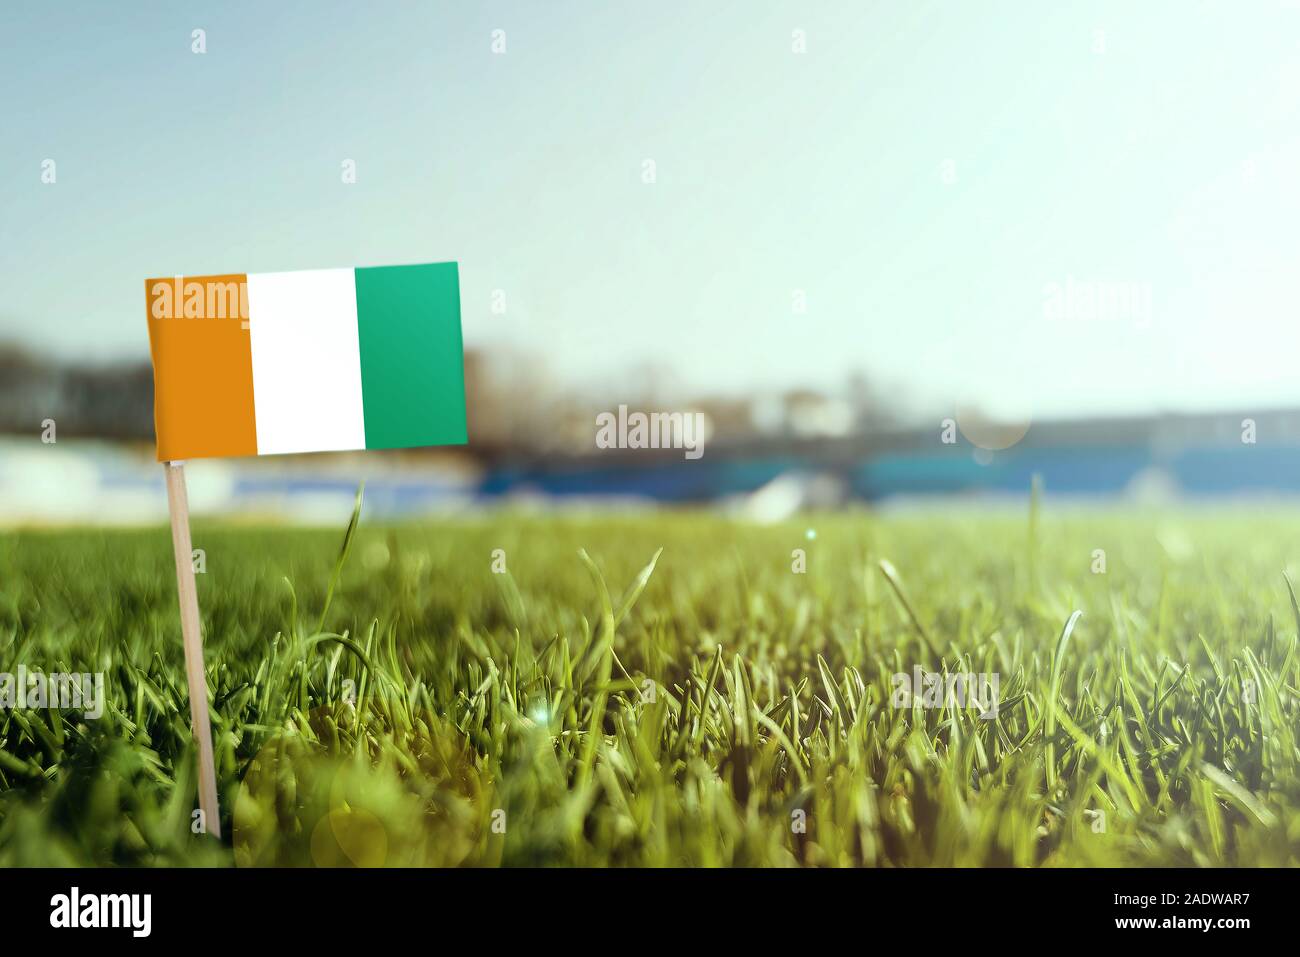 Miniatur stick Cote D'Ivoire Flagge auf grünem Gras, sonnigen Gebiet. Stadion Hintergrund, kopieren Platz für Text. Stockfoto